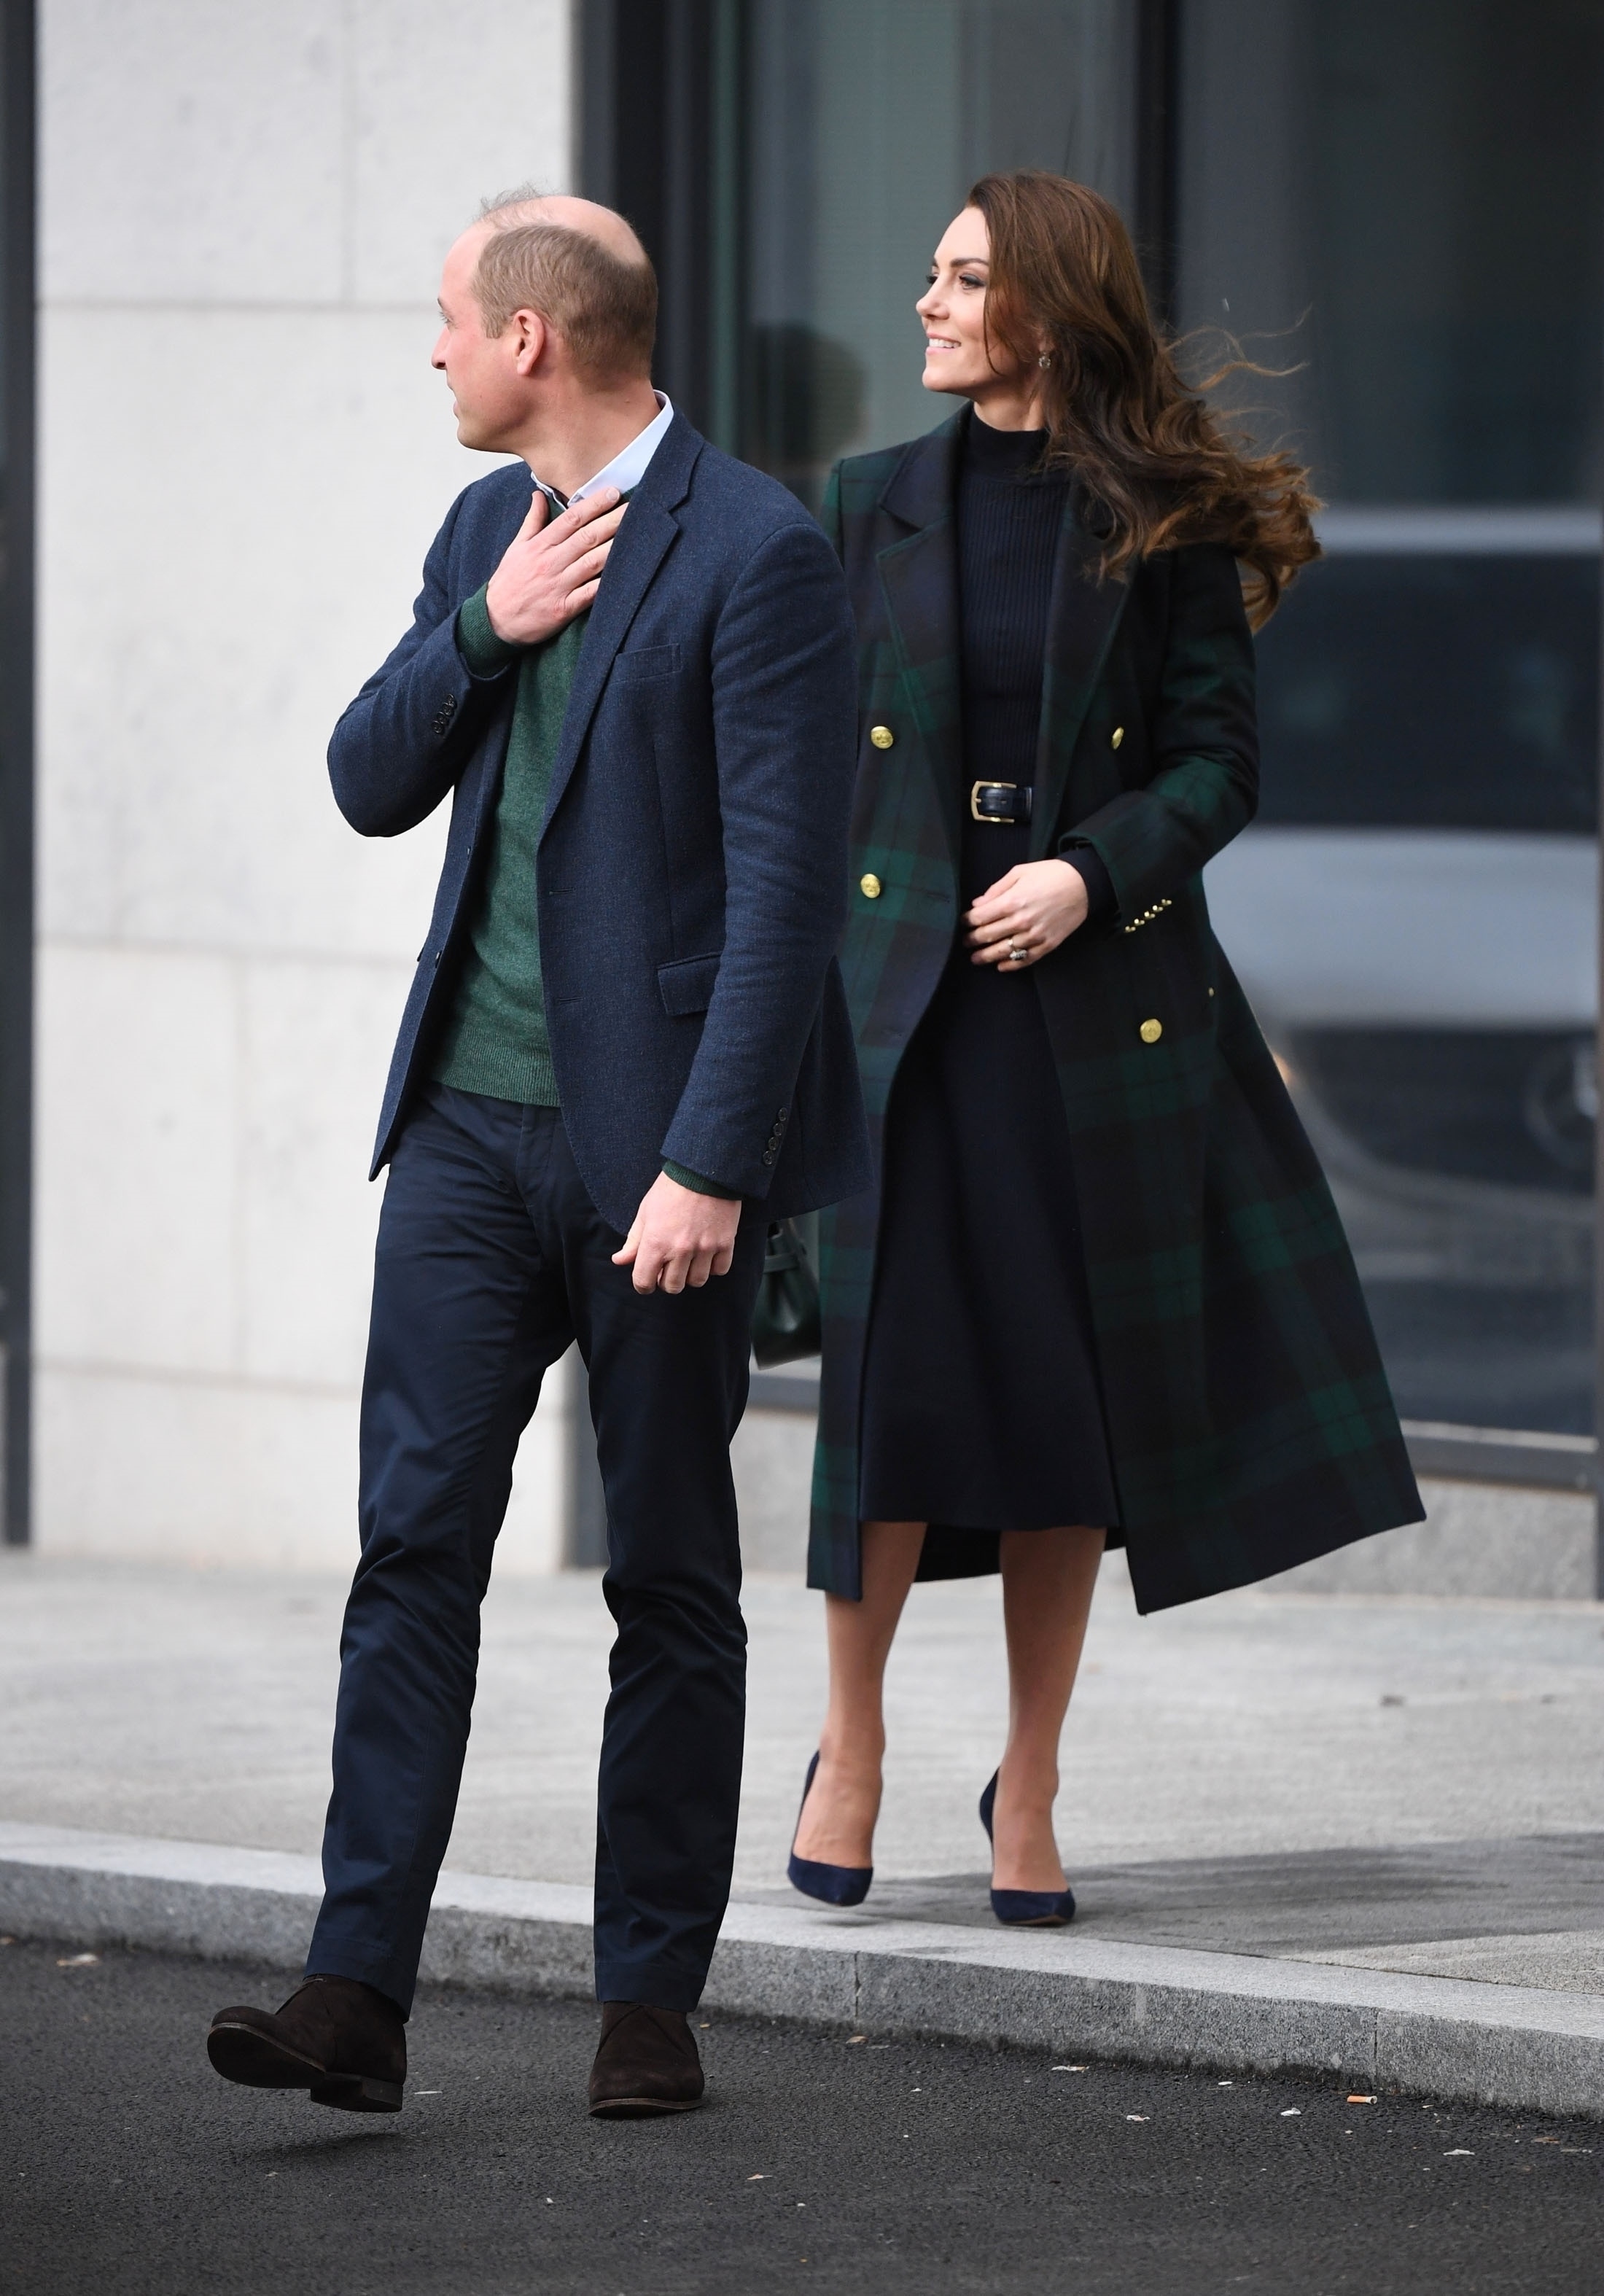 "Никто и ничто не сломит их дух и волю": принц и принцесса Уэльские с сияющими улыбками первый раз вышли в свет после скандала с принцем Гарри